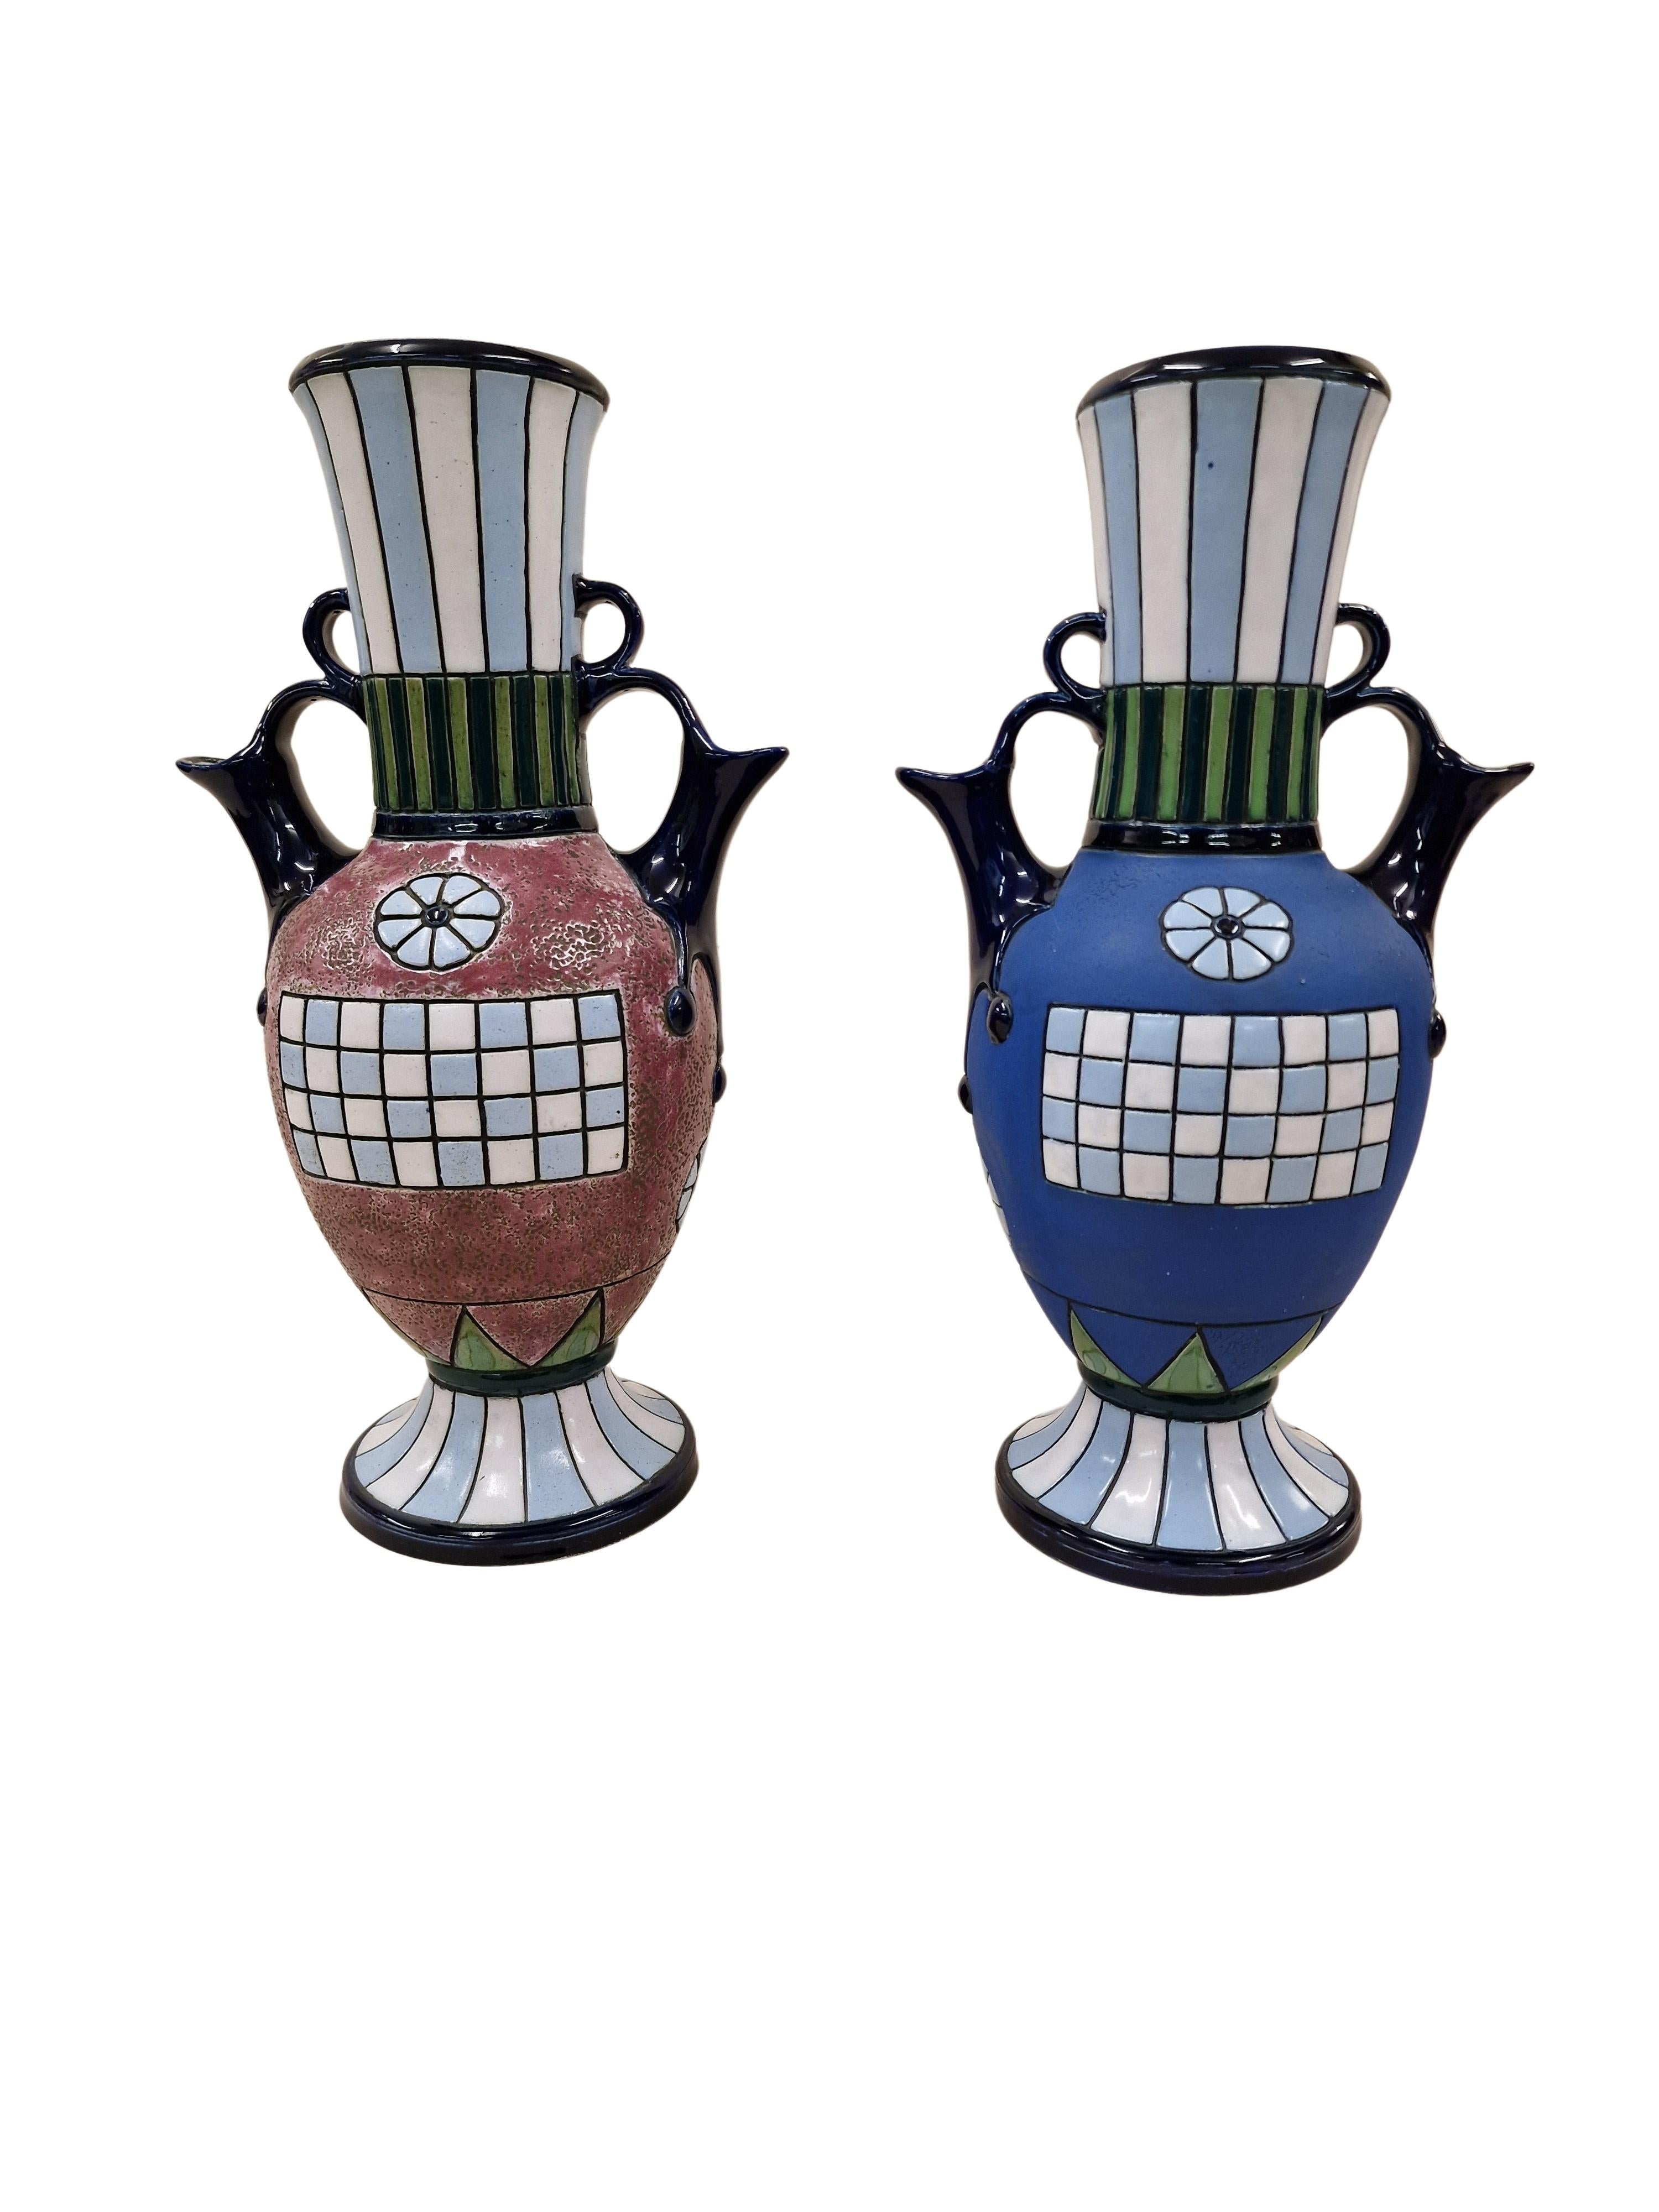 Paar sehr seltene Vasen / Krüge des bekannten Herstellers Amphora, die beidseitig verwendbar sind, hergestellt um 1915 in der Tschechischen Republik. 

Das außergewöhnliche Paar hat die gleiche Größe, ist aber in Farbe und Dekor unterschiedlich.